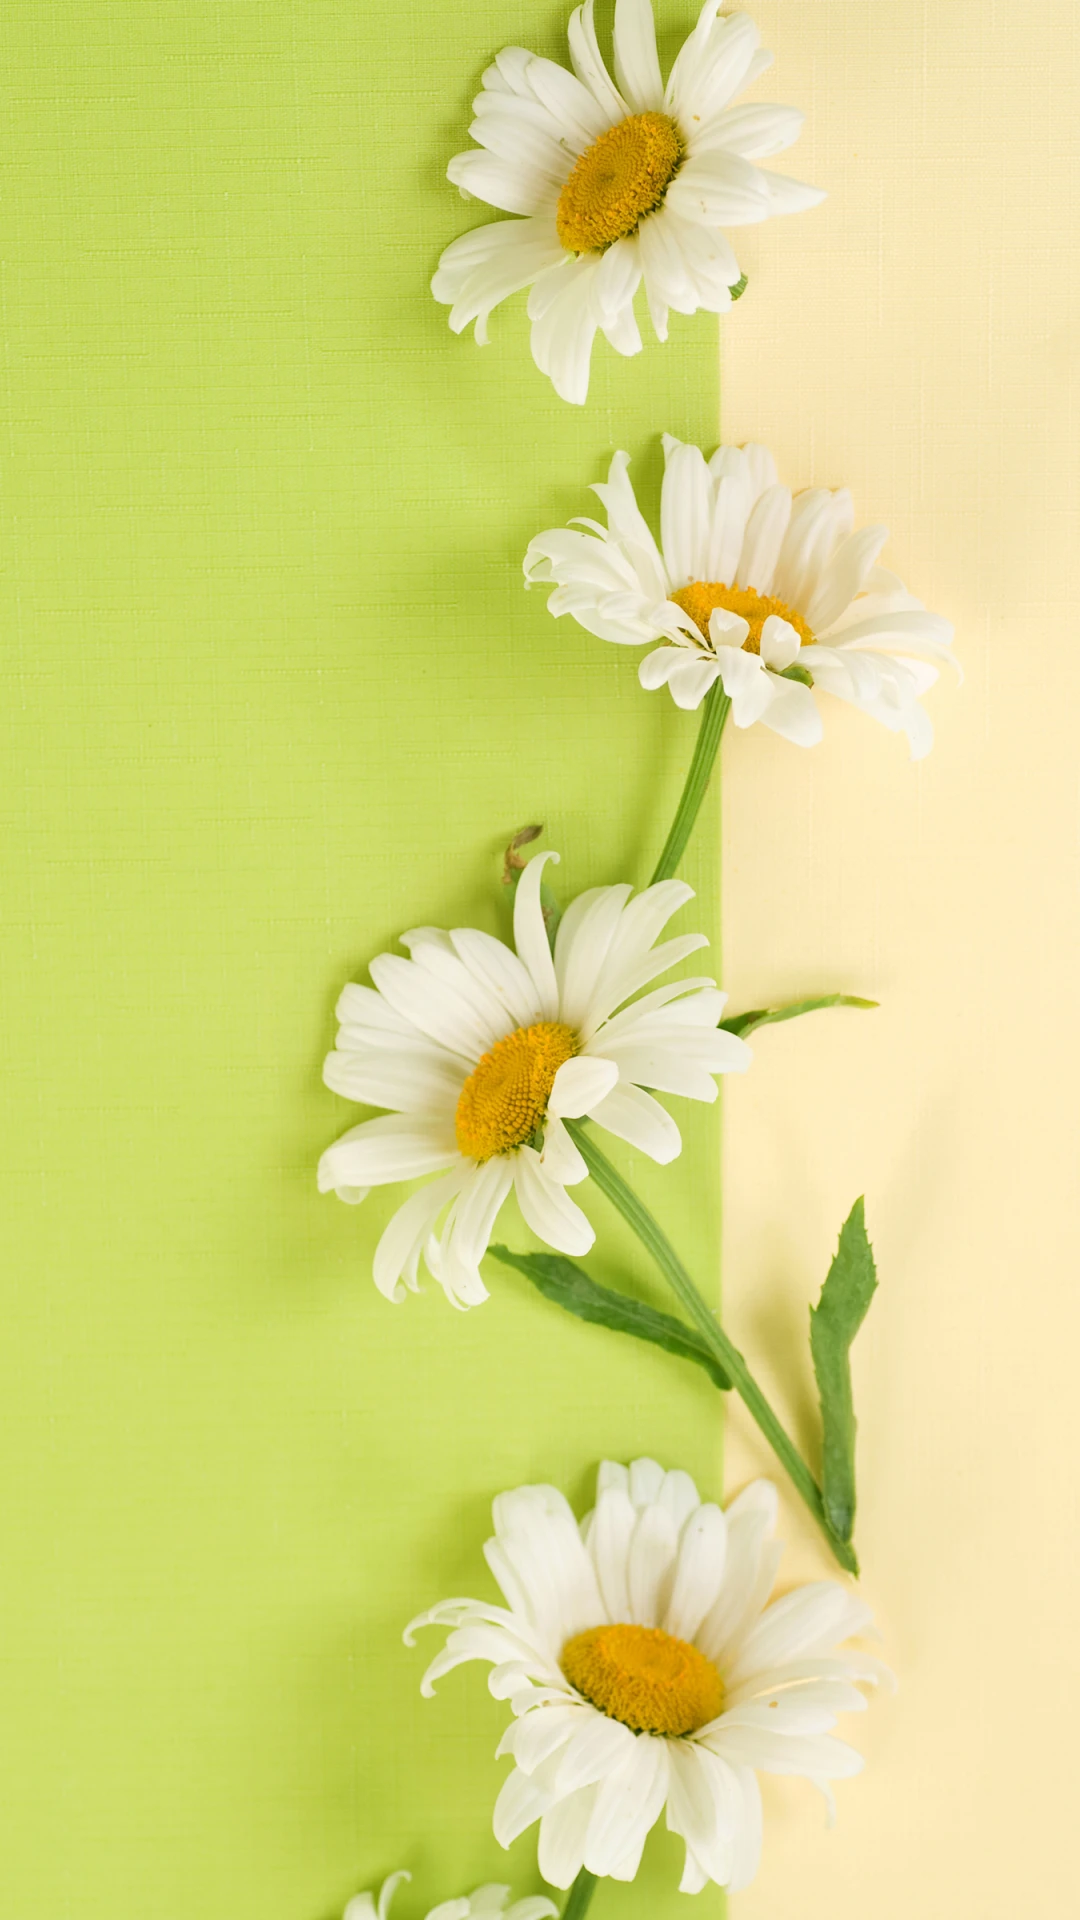 美丽的花朵 iphone苹果手机竖屏 高清桌面壁纸-PixStock 源像素